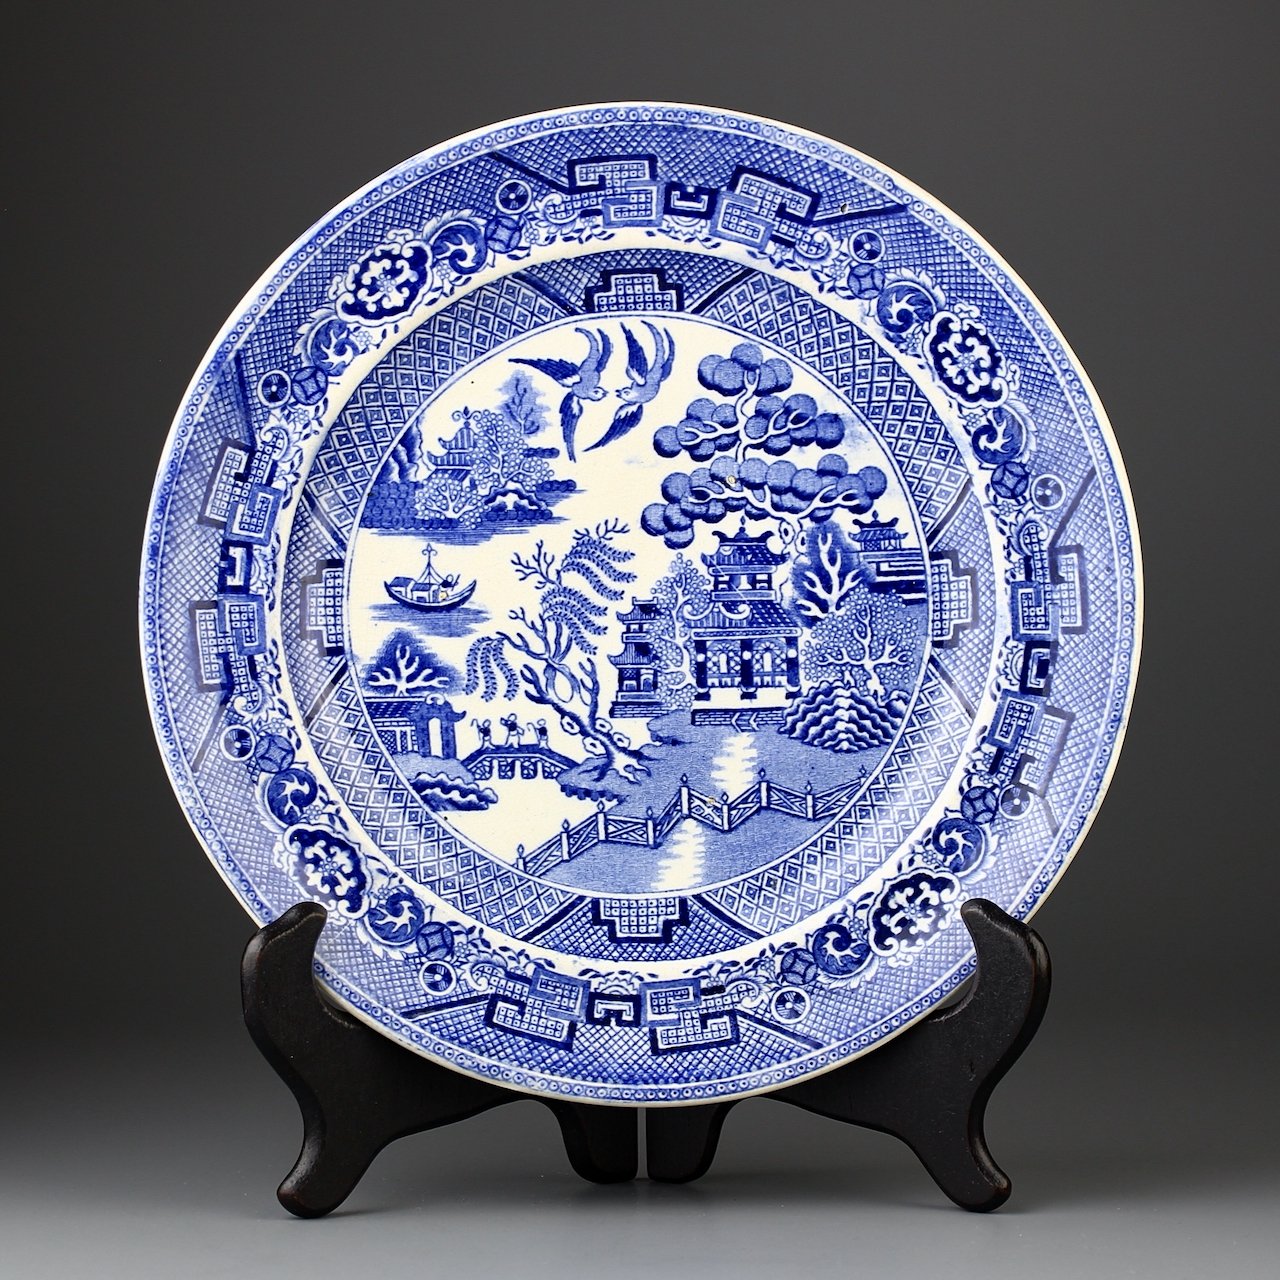 Антикварная тарелка Fenton Staffordshire Stone China "Blue Willow" Голубая ива